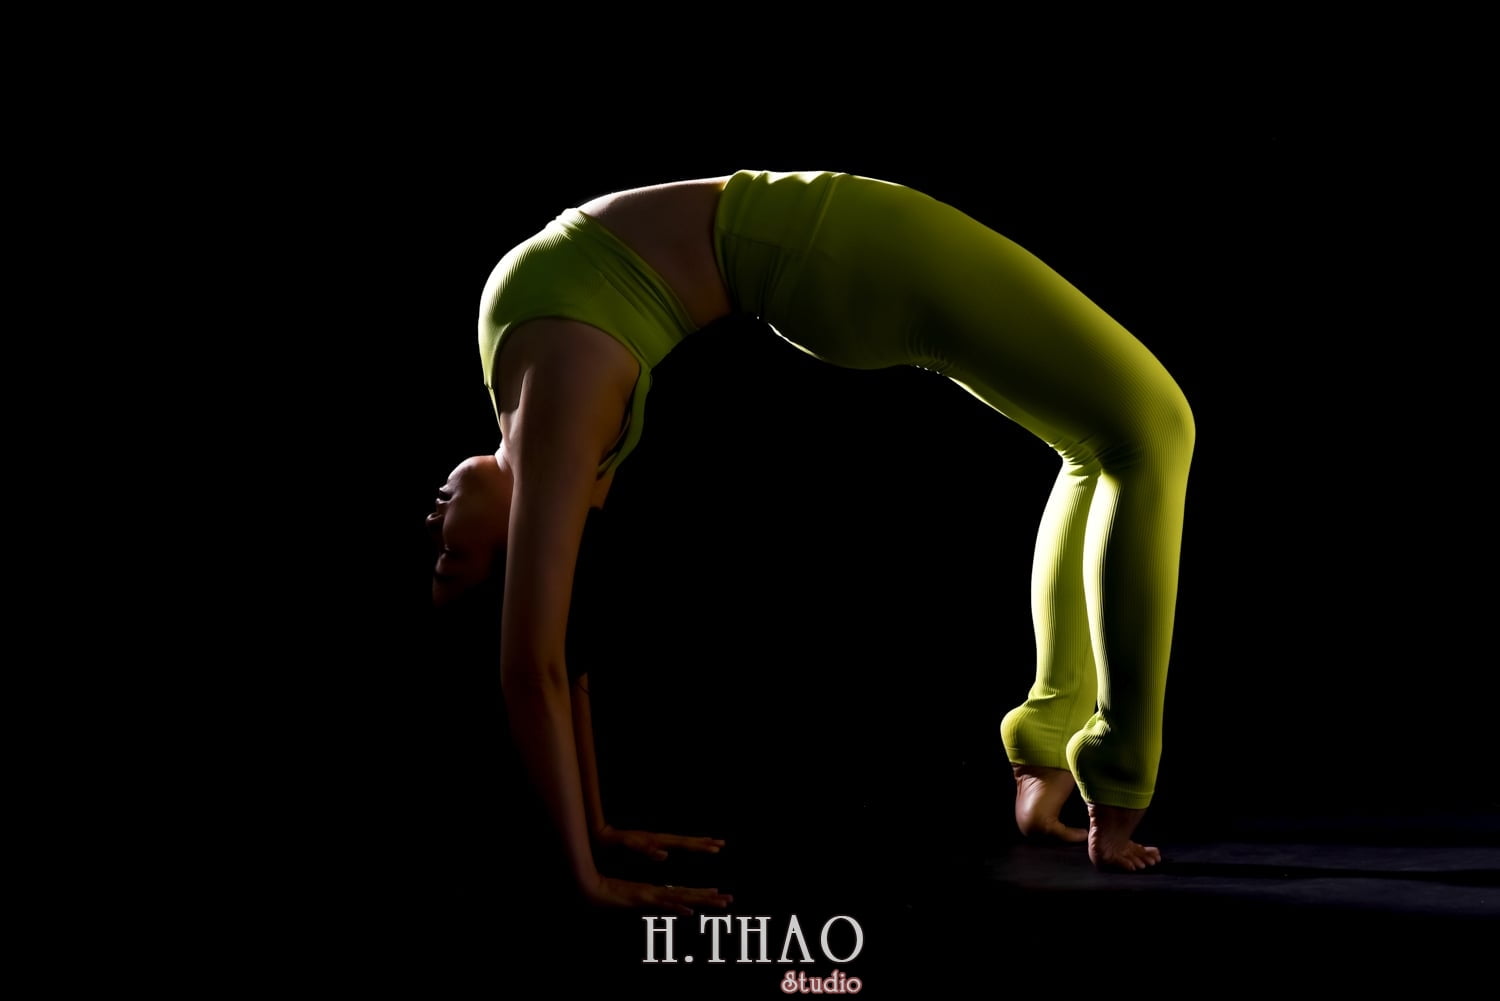 Anh yoga 24 min - Bộ ảnh Yoga chụp trong studio tuyệt đẹp – HThao Studio